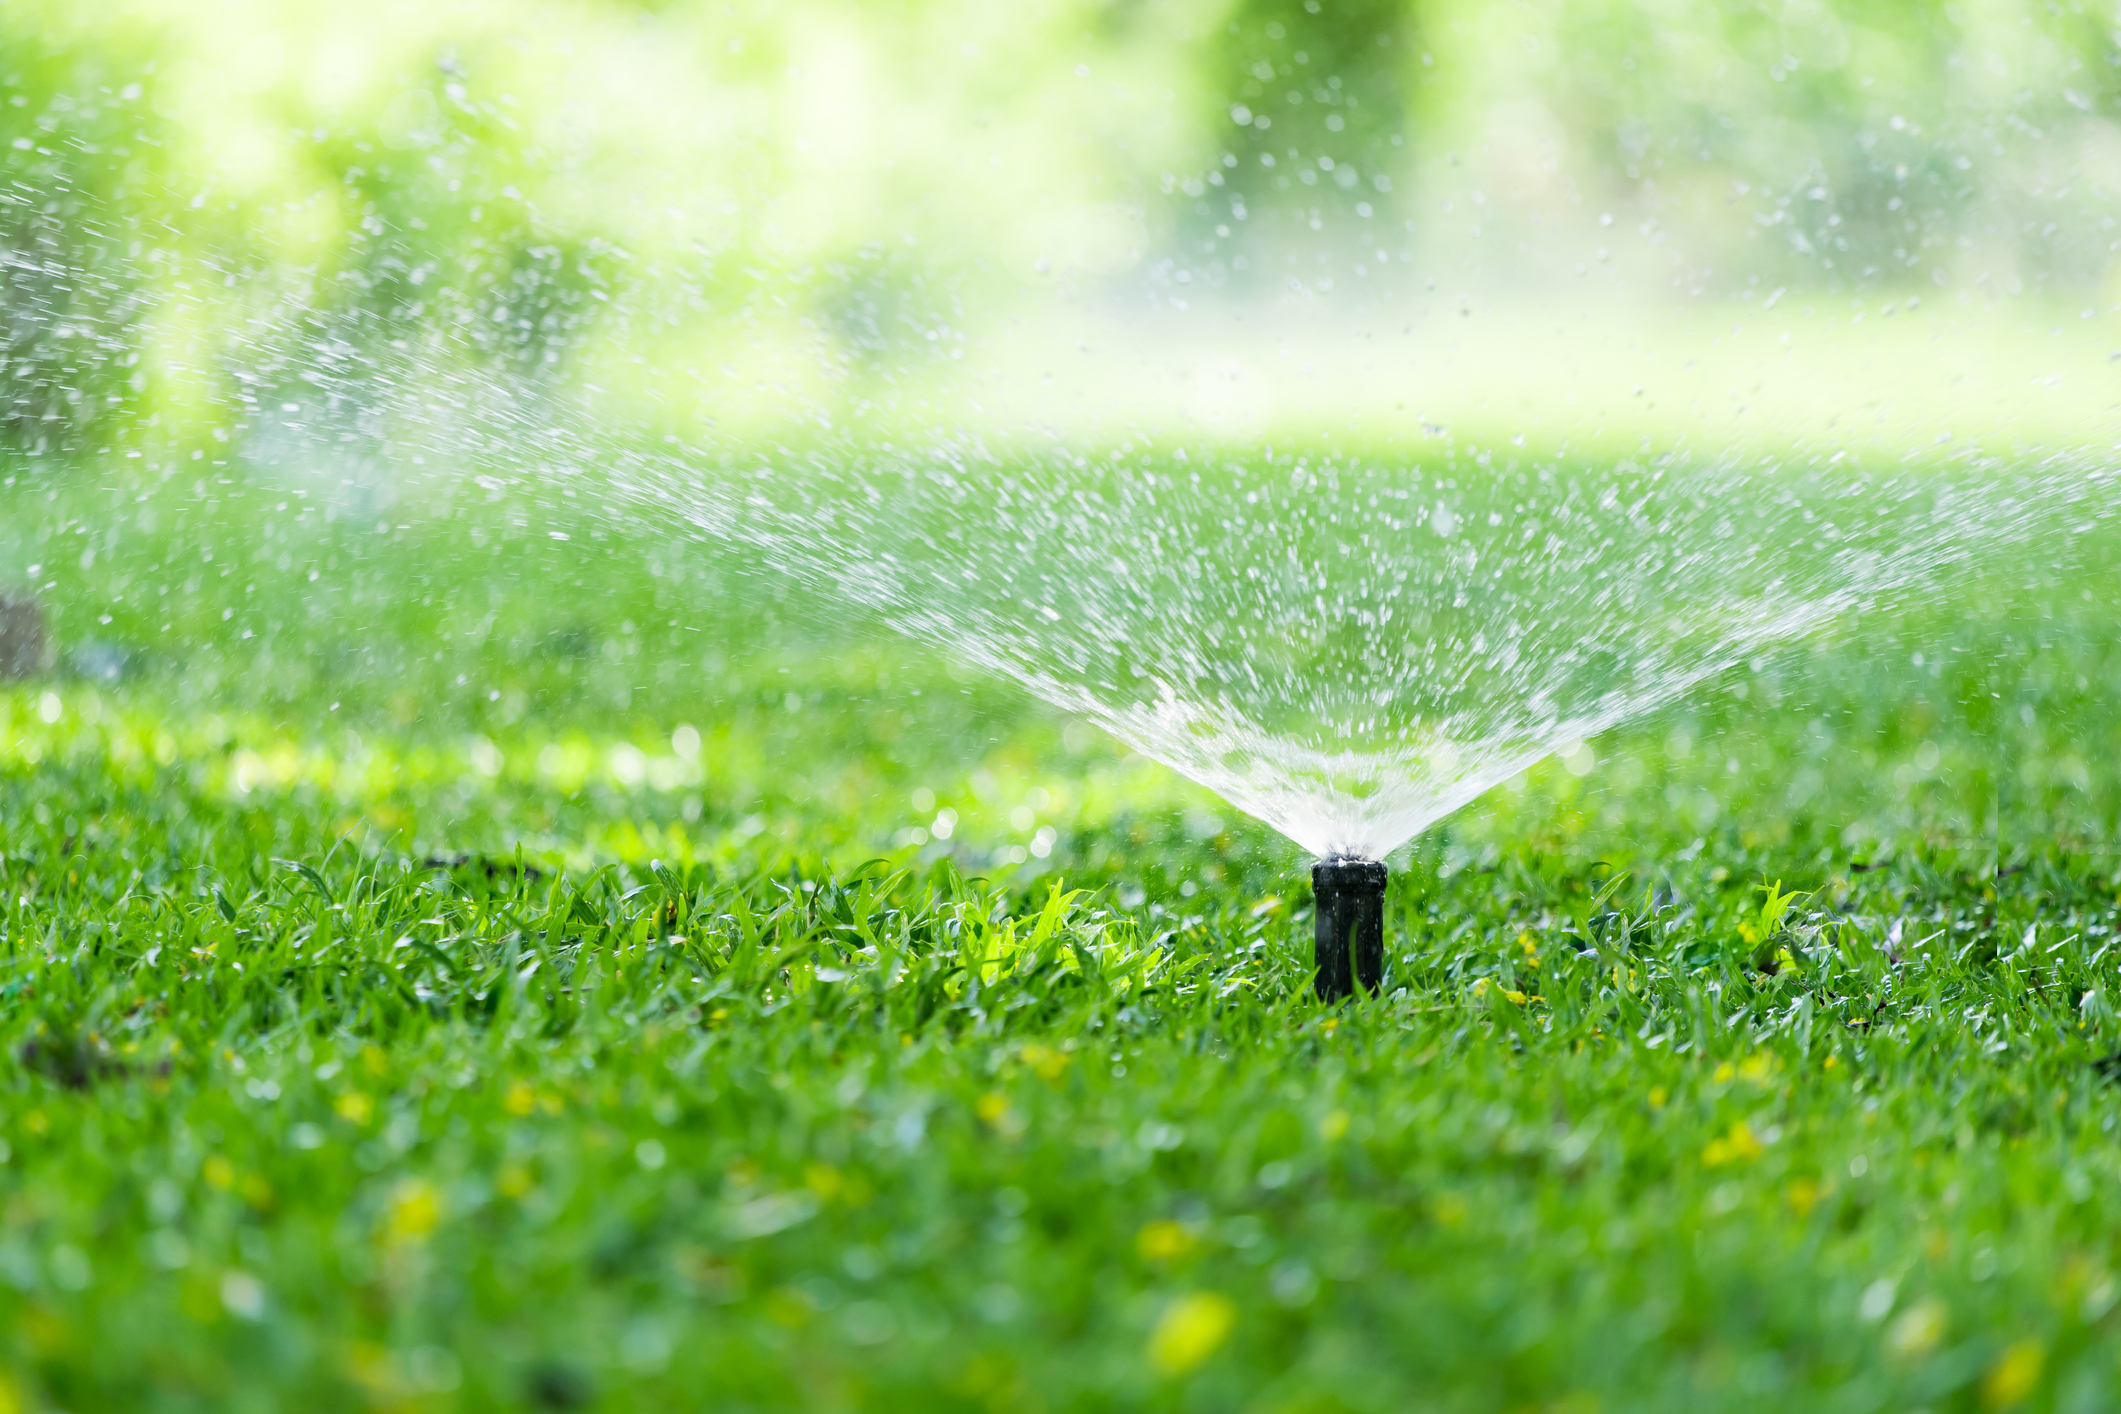 Pro Series Impulse Sprinkler  Early's Farm & Garden Centre